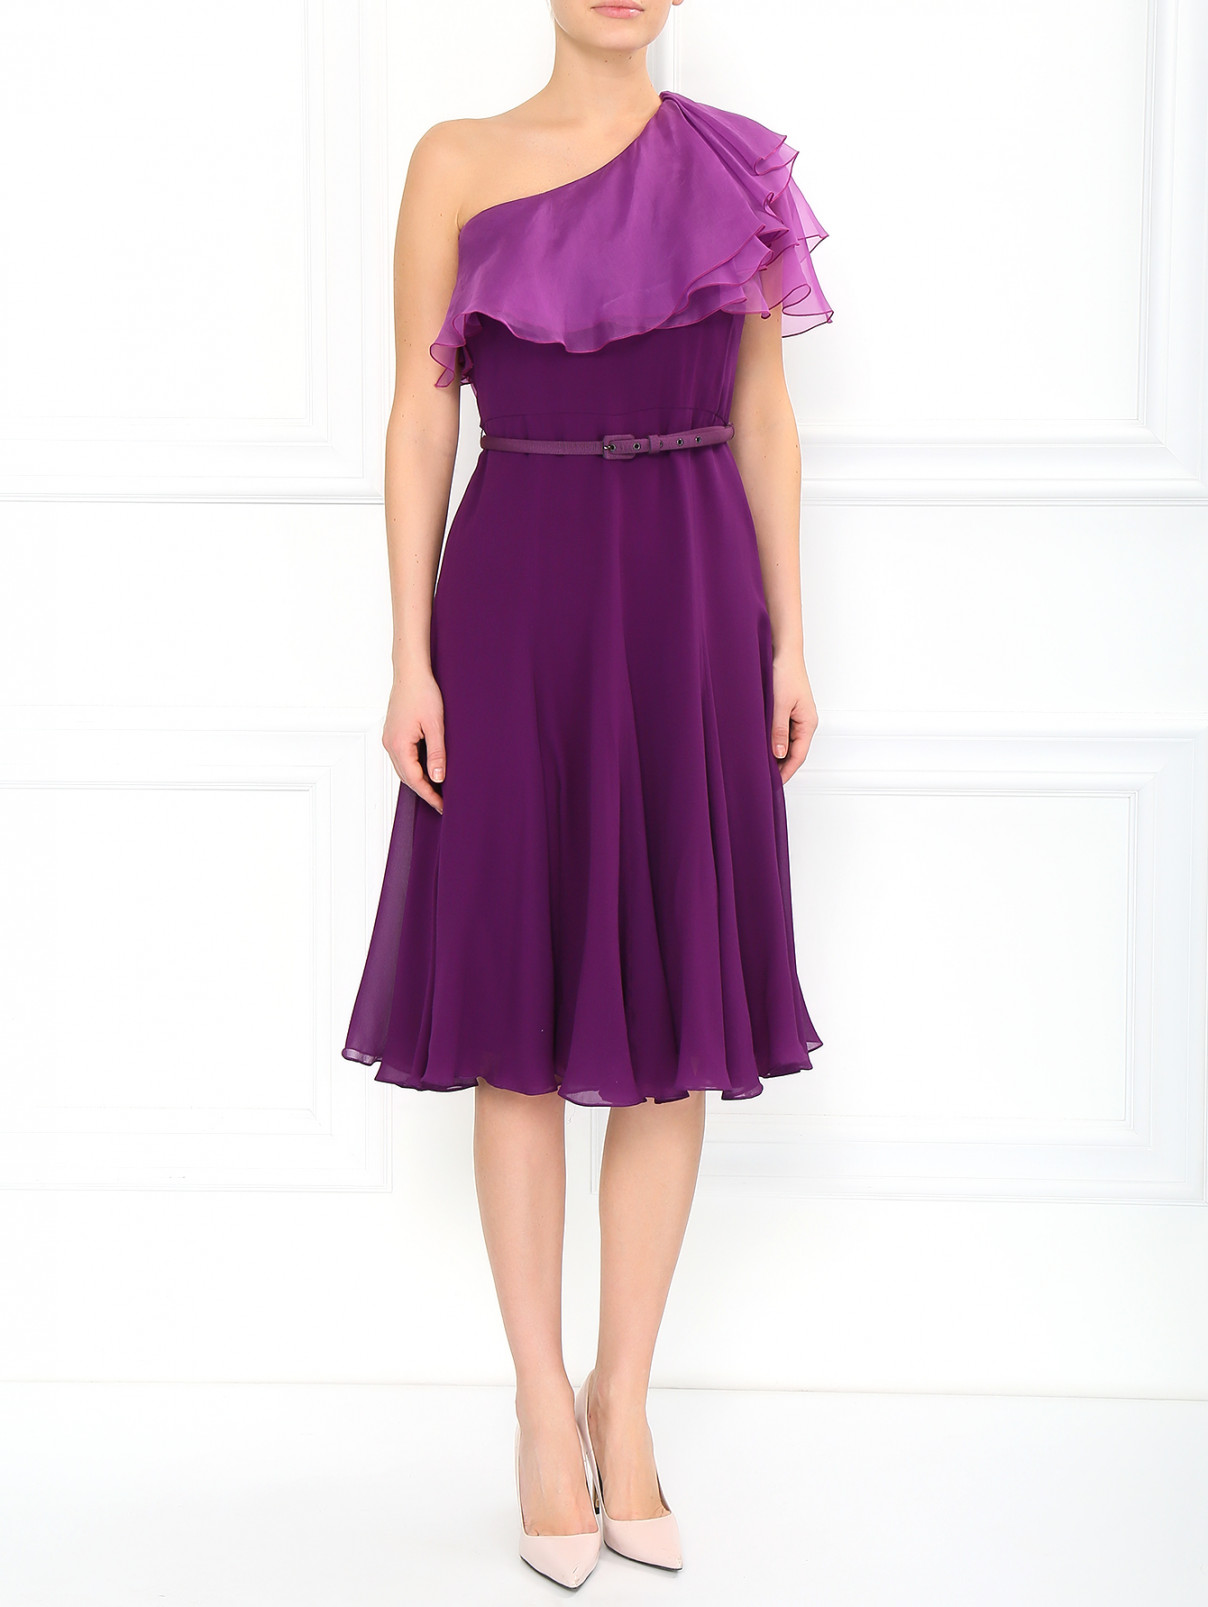 Платье на одно плечо Max Mara  –  Модель Общий вид  – Цвет:  Фиолетовый